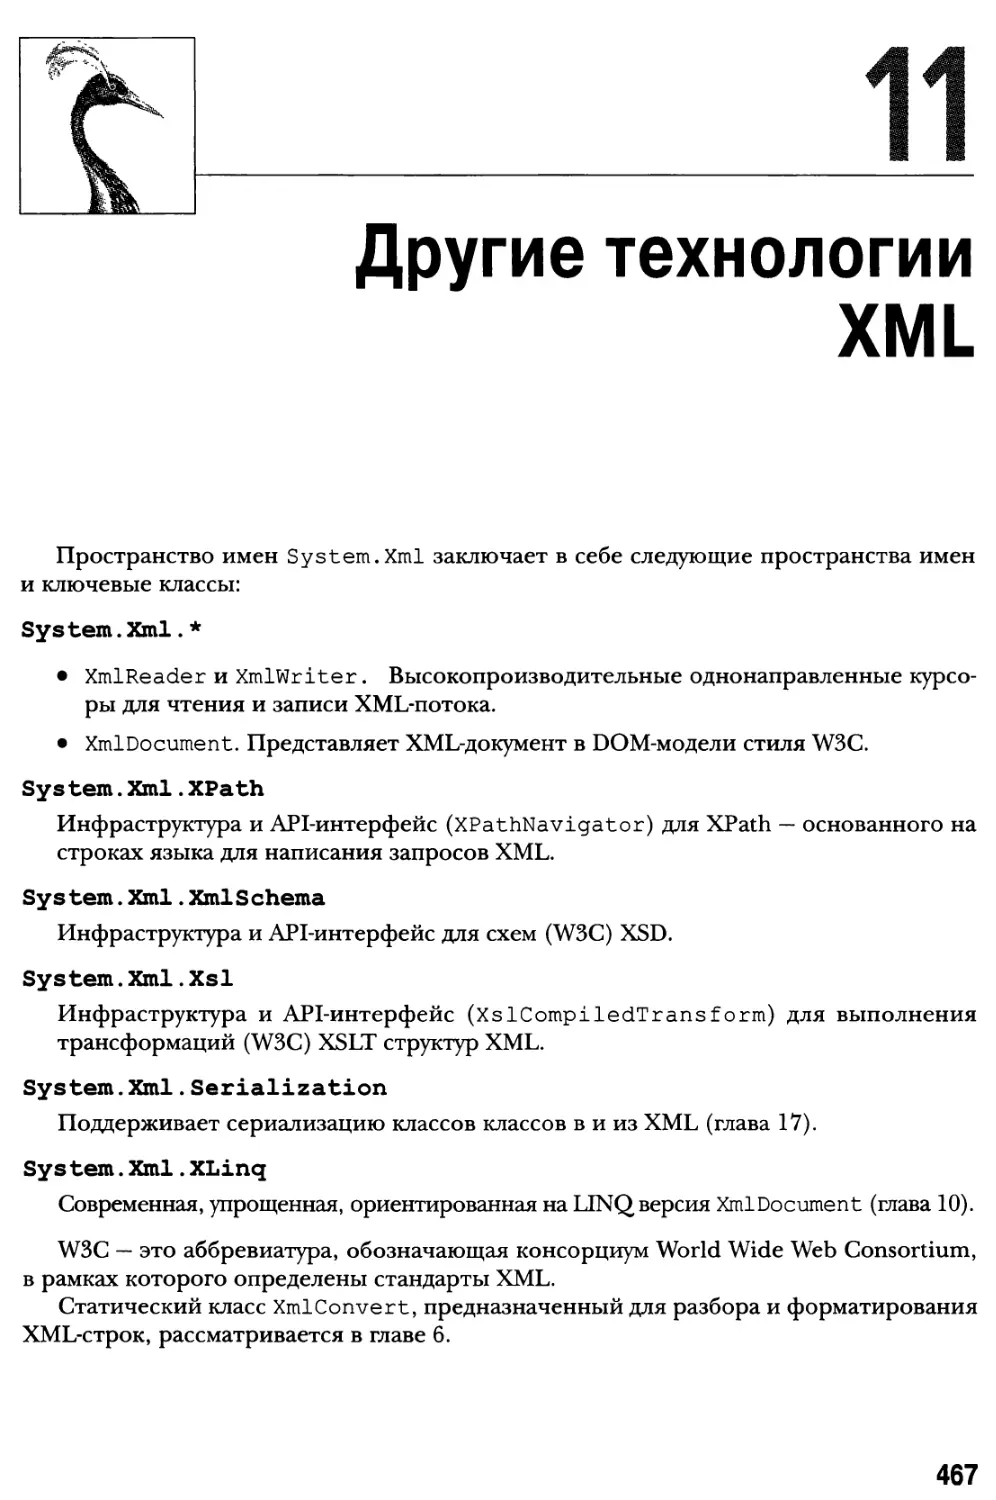 Глава 11. Другие технологии XML